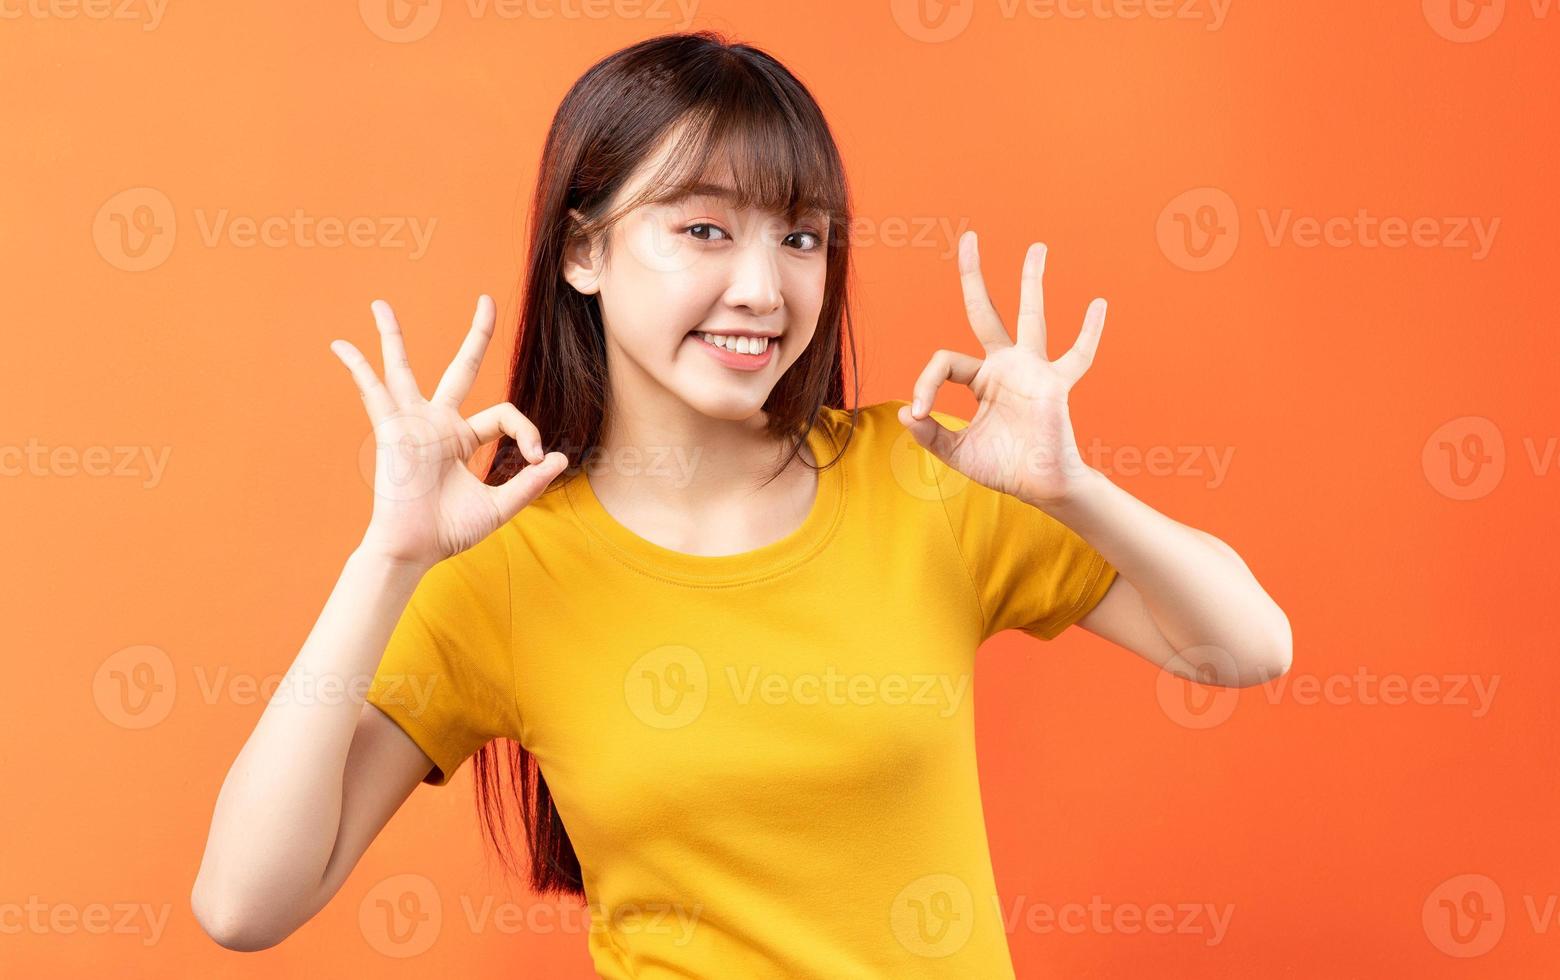 afbeelding van een jonge Aziatische vrouw die een geel t-shirt draagt op een oranje achtergrond orange foto